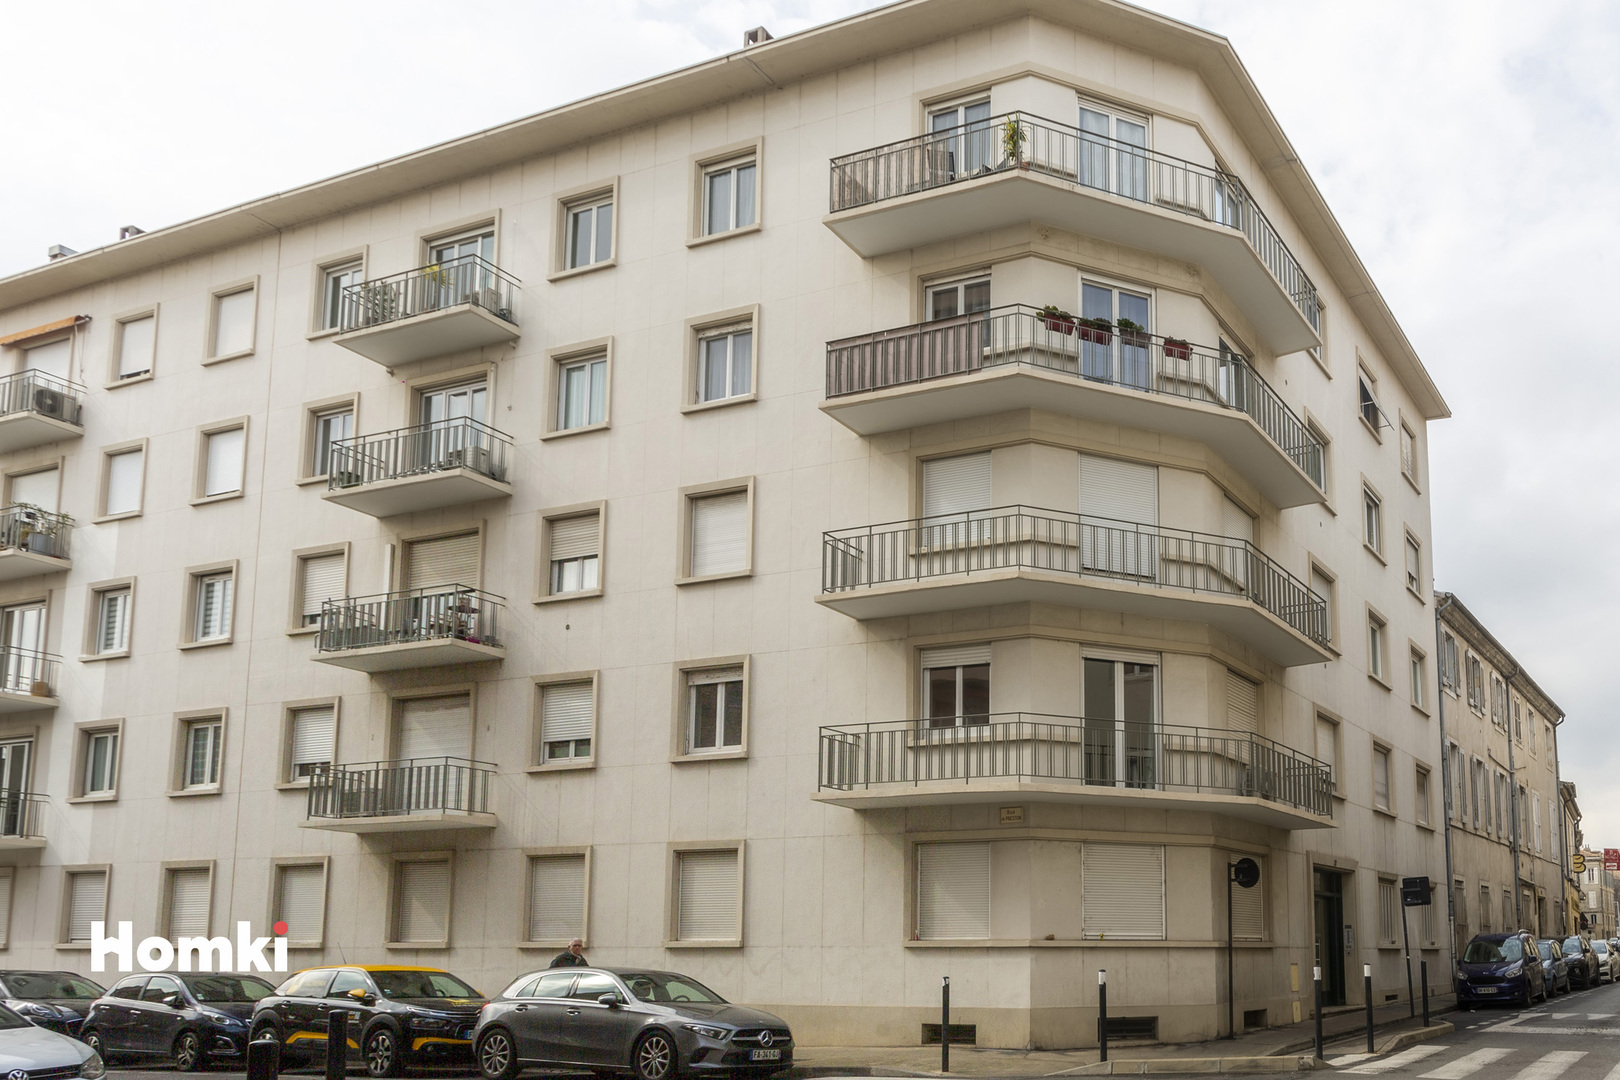 Homki - Vente Appartement  de 56.0 m² à Nîmes 30000